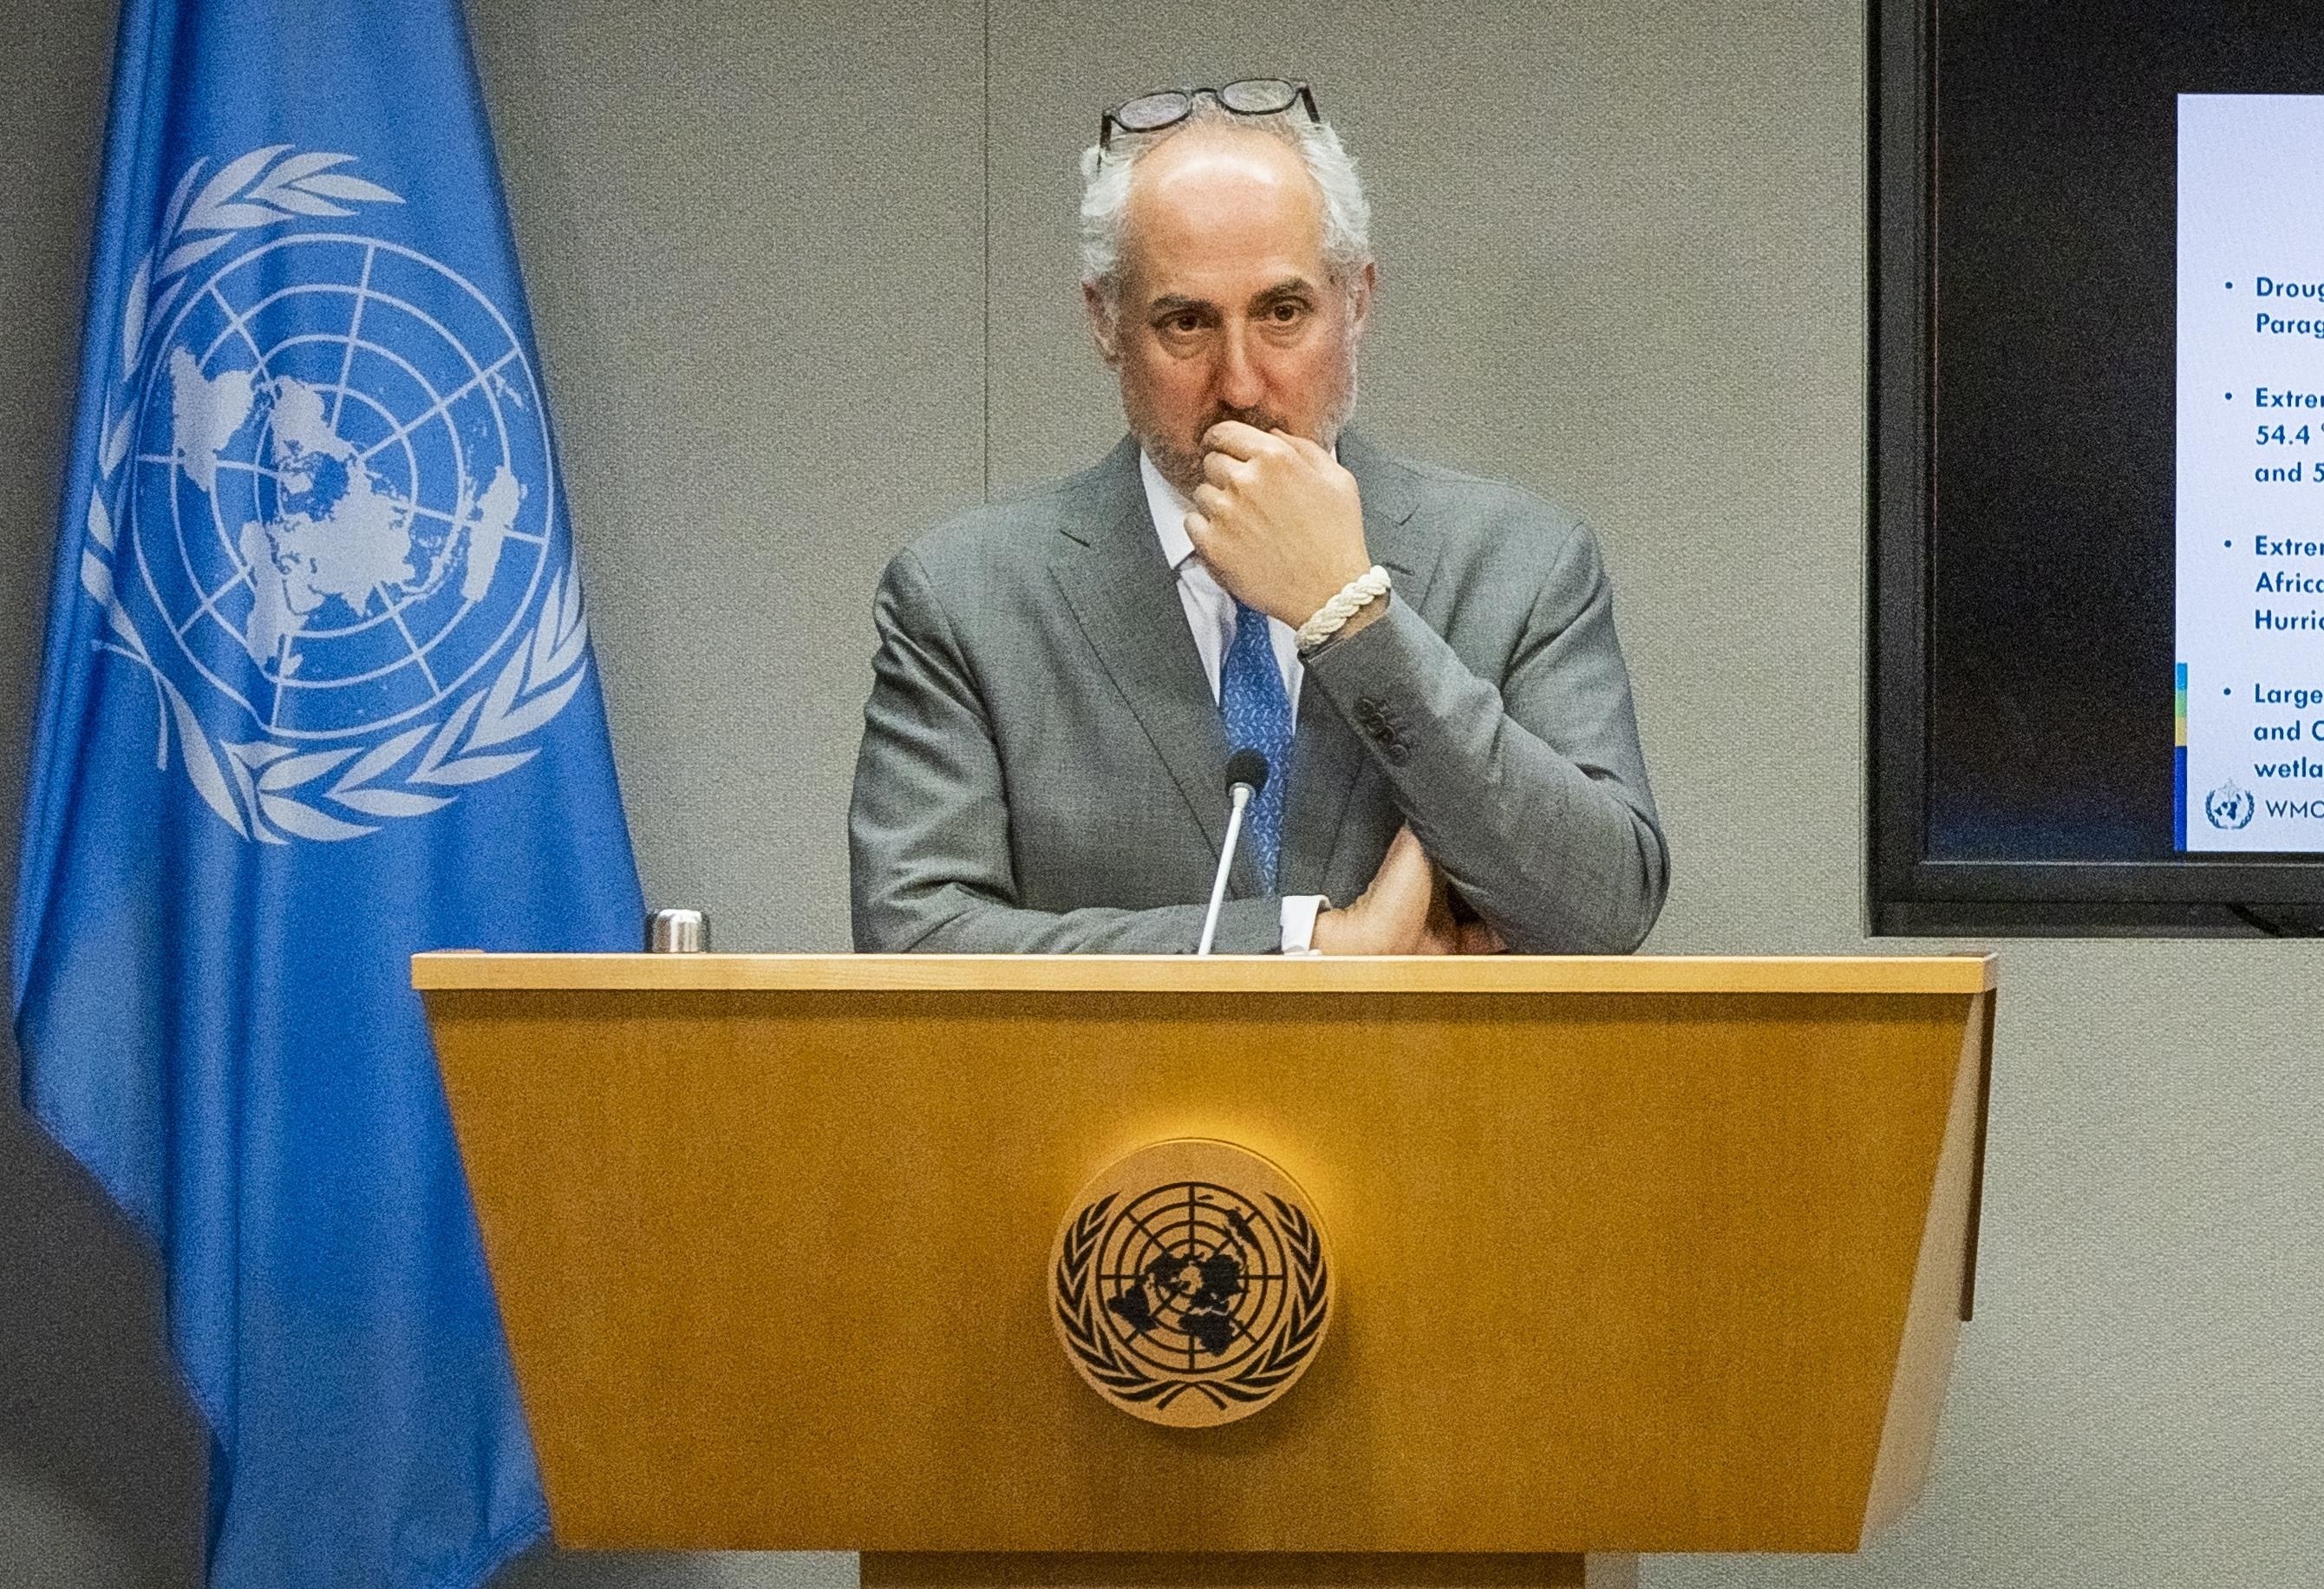 El portavoz de las Naciones Unidas, Stéphane Dujarric